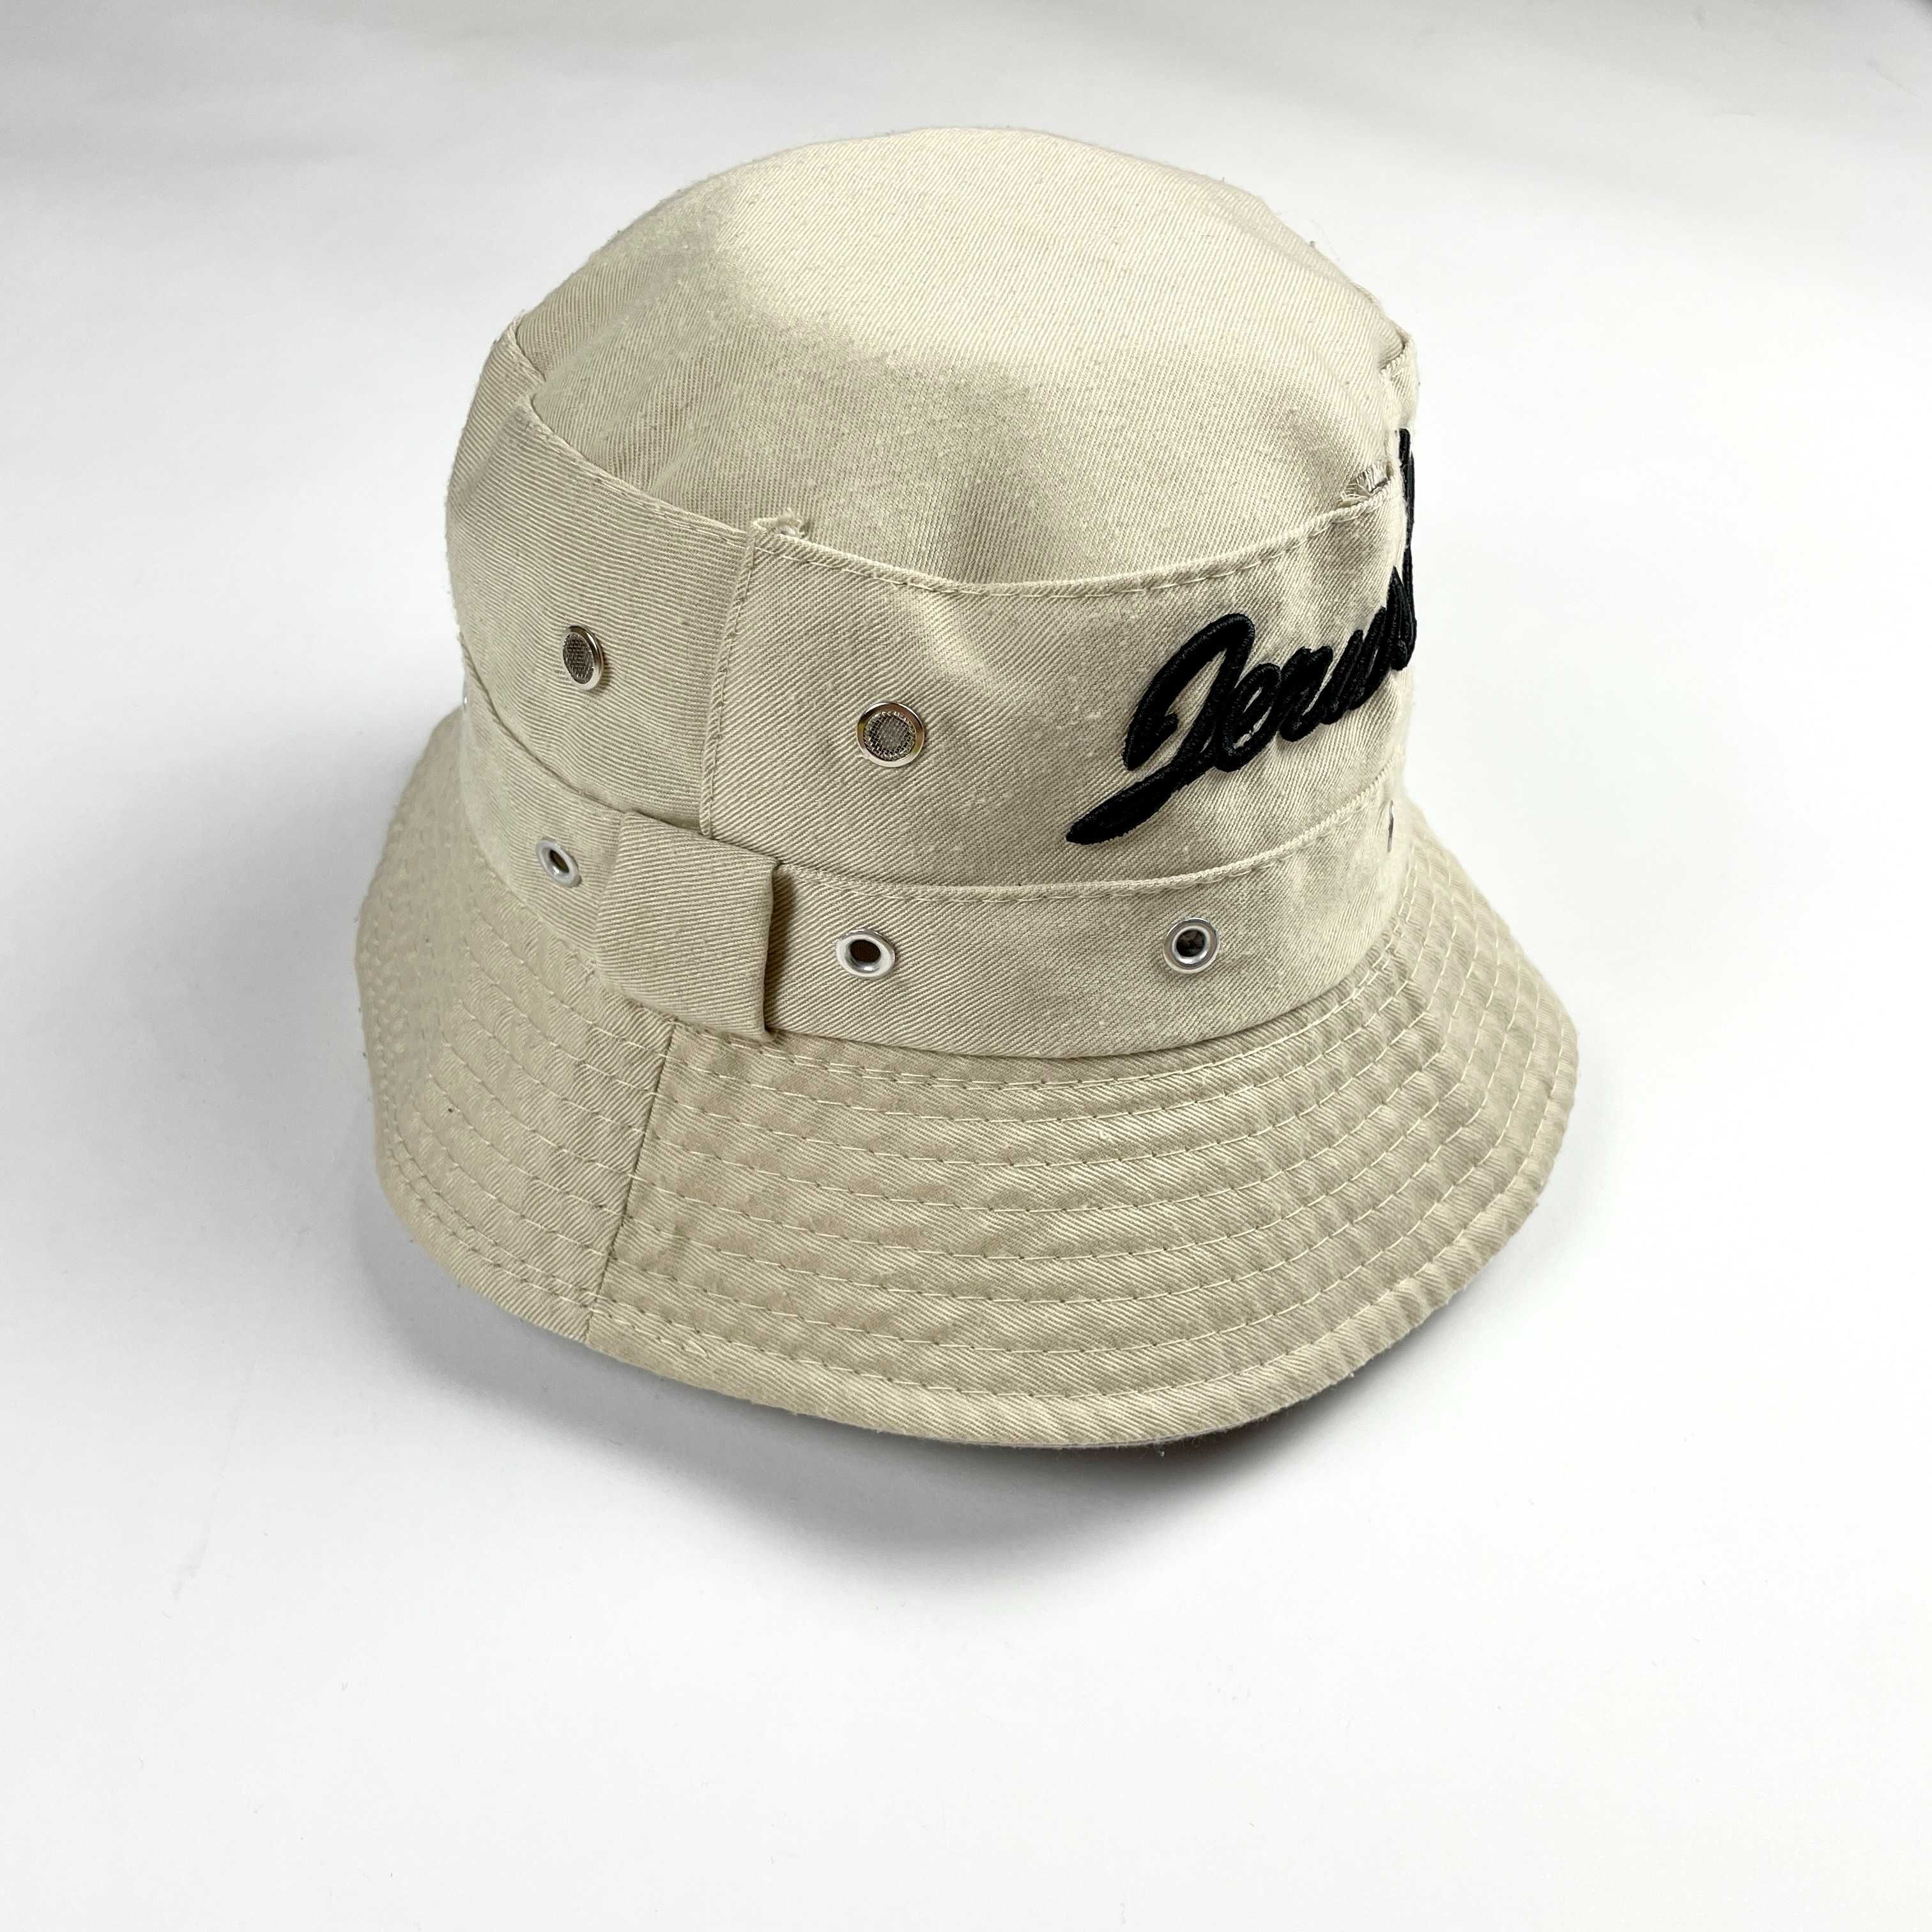 Vintage beżowy bucket hat kapelusz 90s 80s retro streetwear y2k